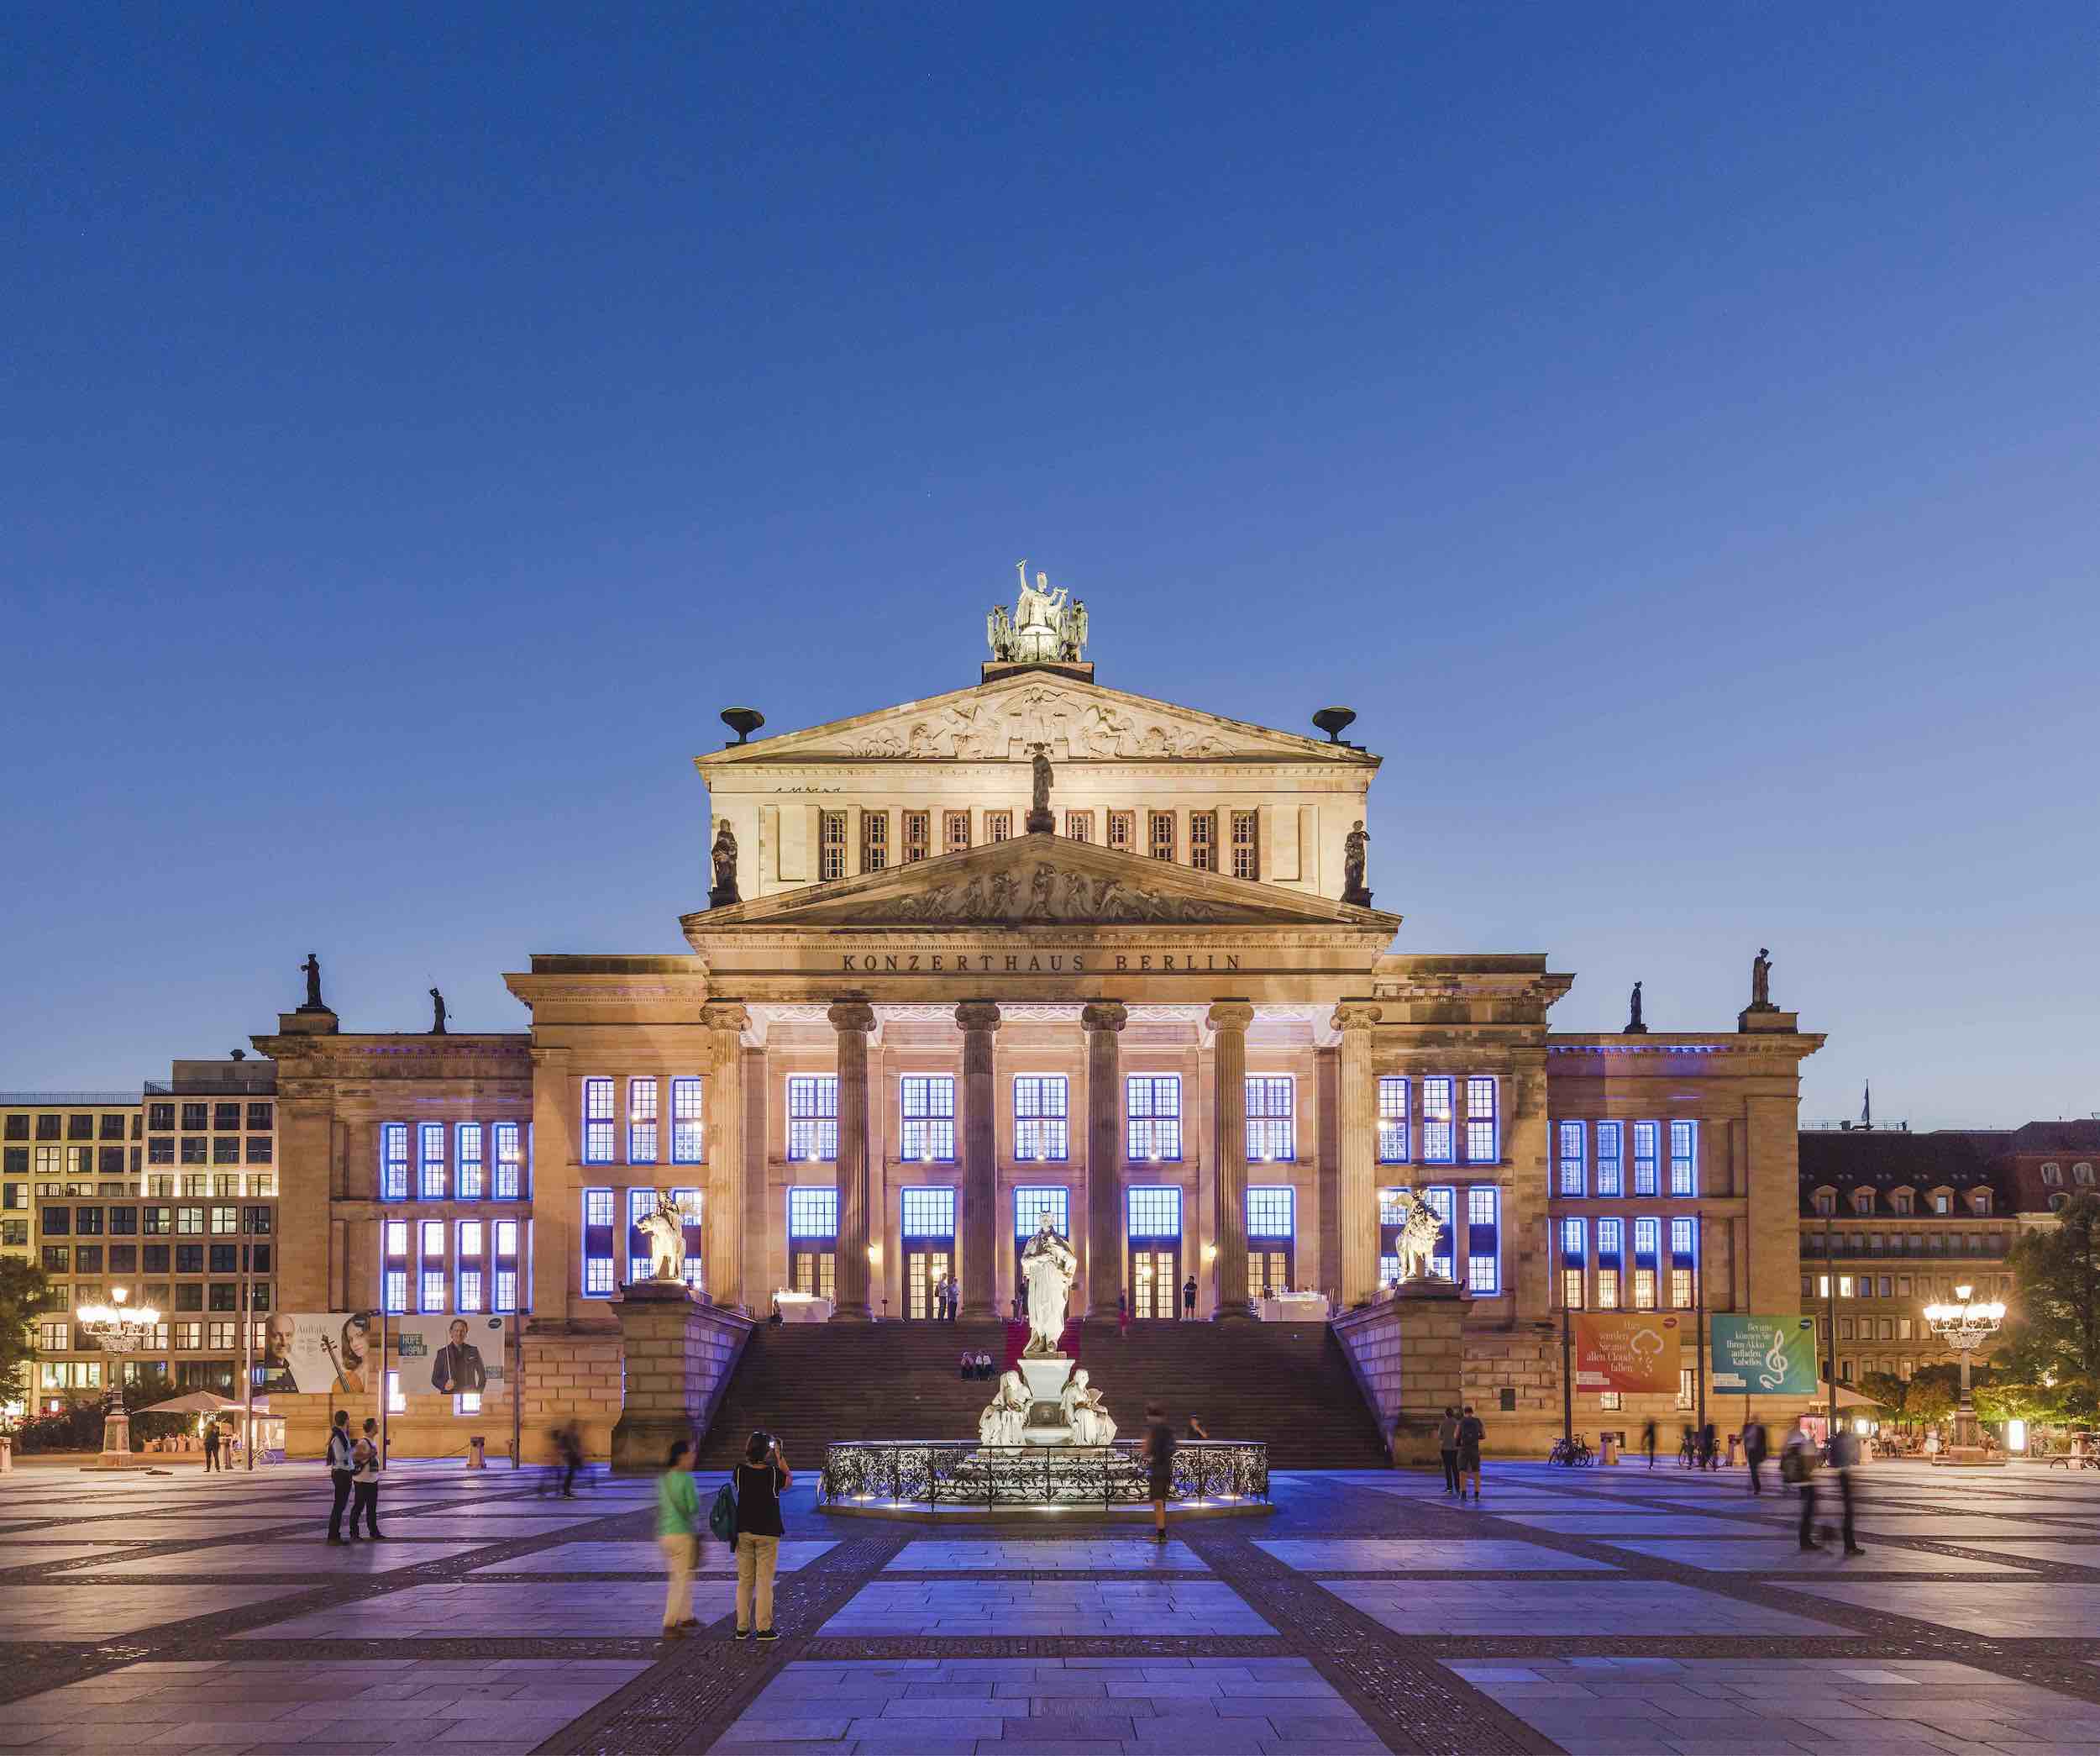 Vortrag für das Konzerthaus Berlin | “Entspannt – gespannt in Auftrittssituationen”